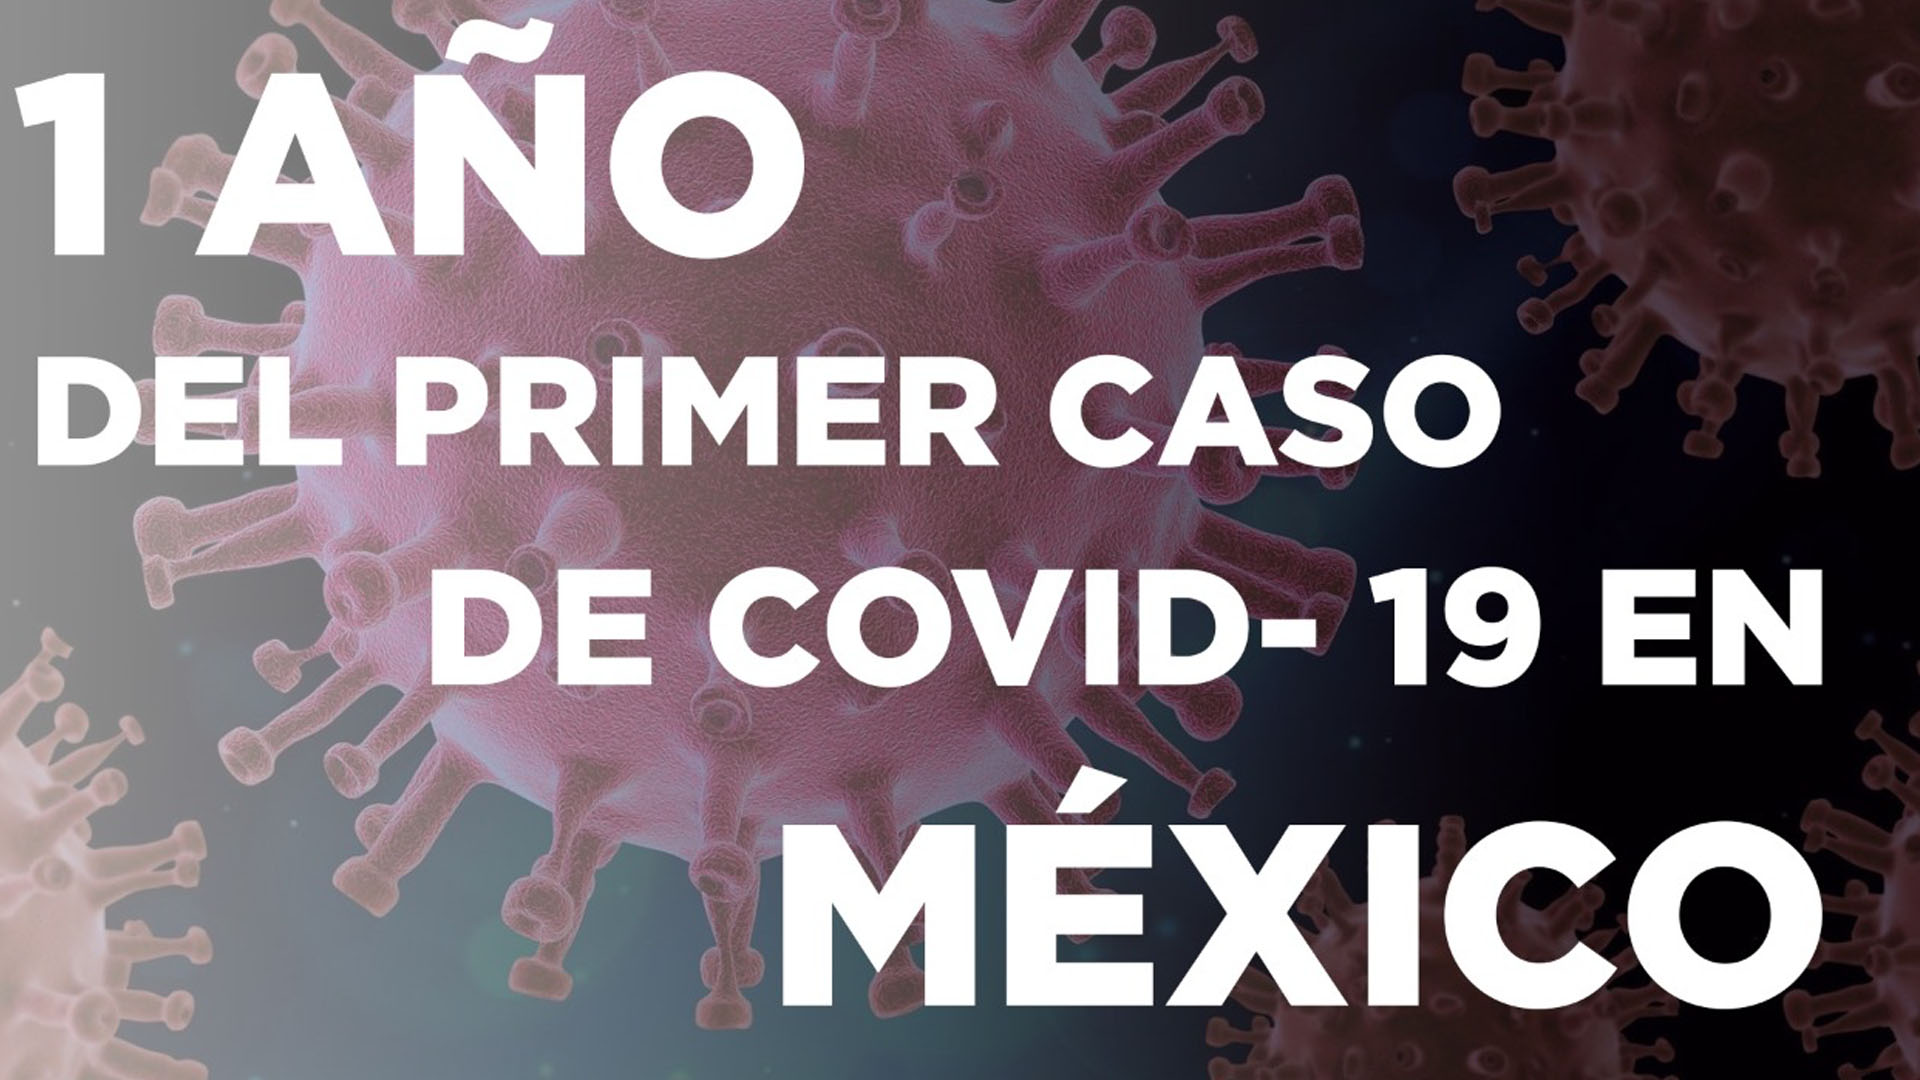 UN AÑO DEL PRIMER CASO DE COVID-19 EN MÉXICO